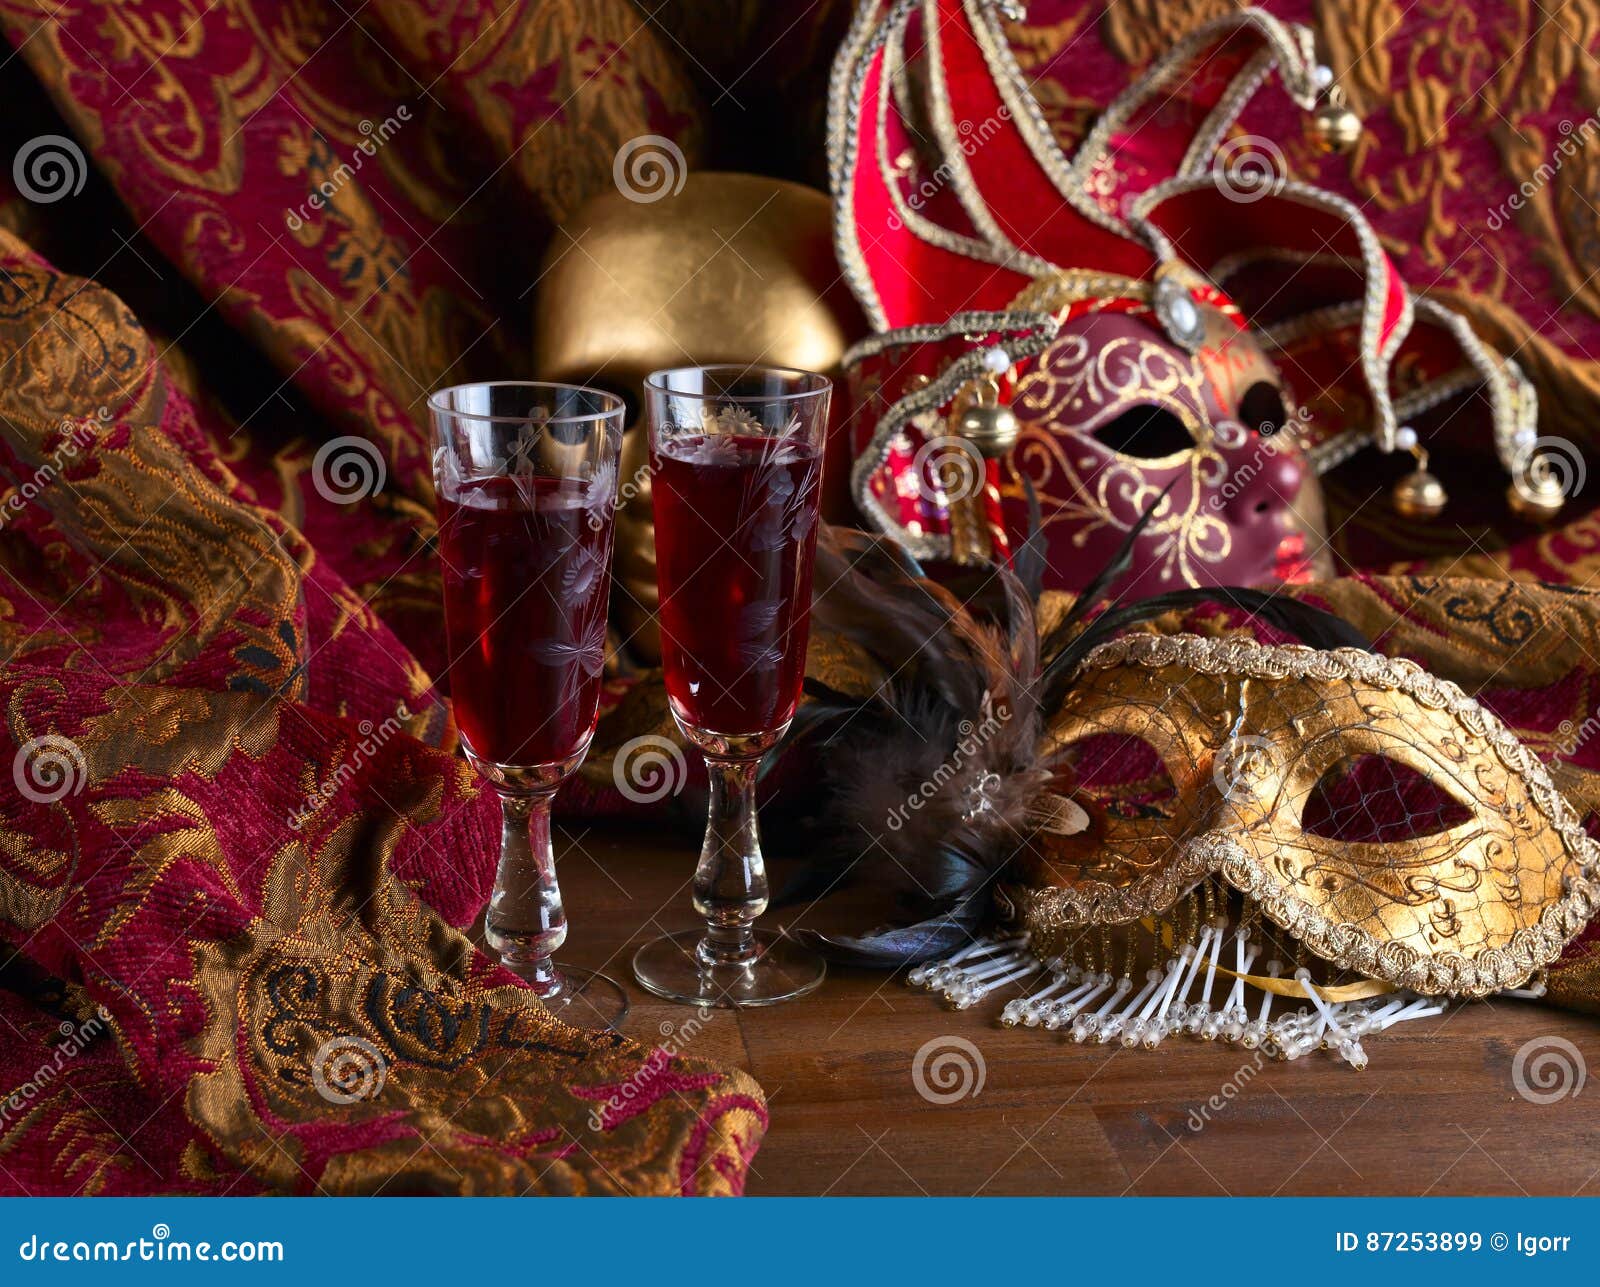 Шампанское венецианская маска. Венецианская маска шампанское. Вино Венециан маска. Венецианская маска шампанское фото. Фото бутылки карнавальная маска шампанское.